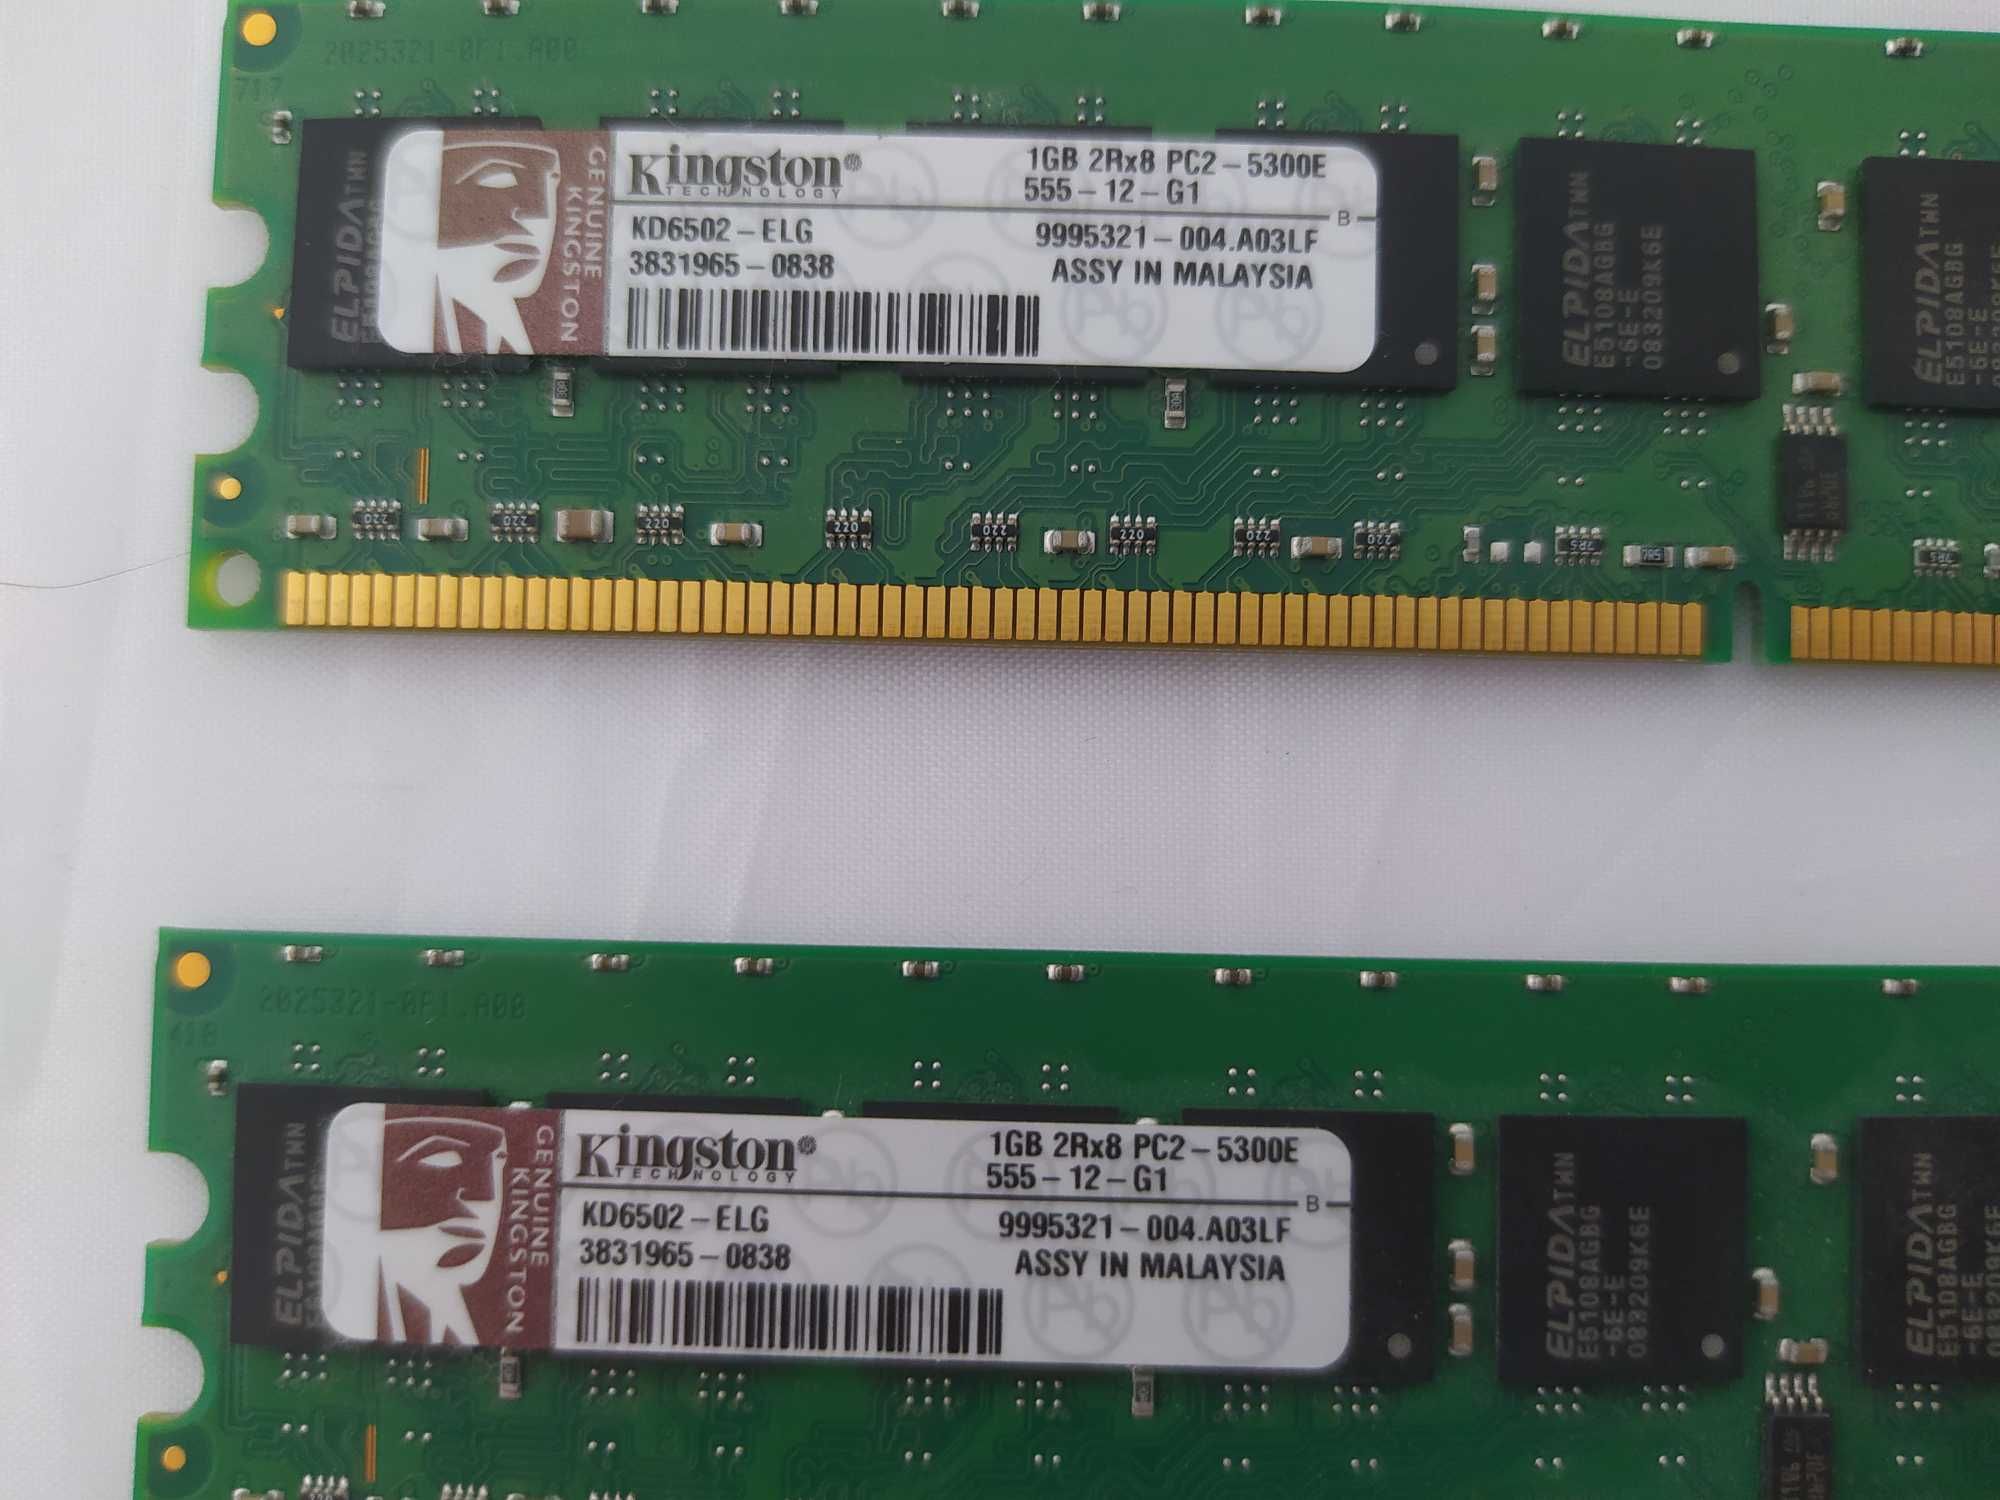 2x RAM Kingston KD6502-ELG 1GB DDR2 ECC UB CL5